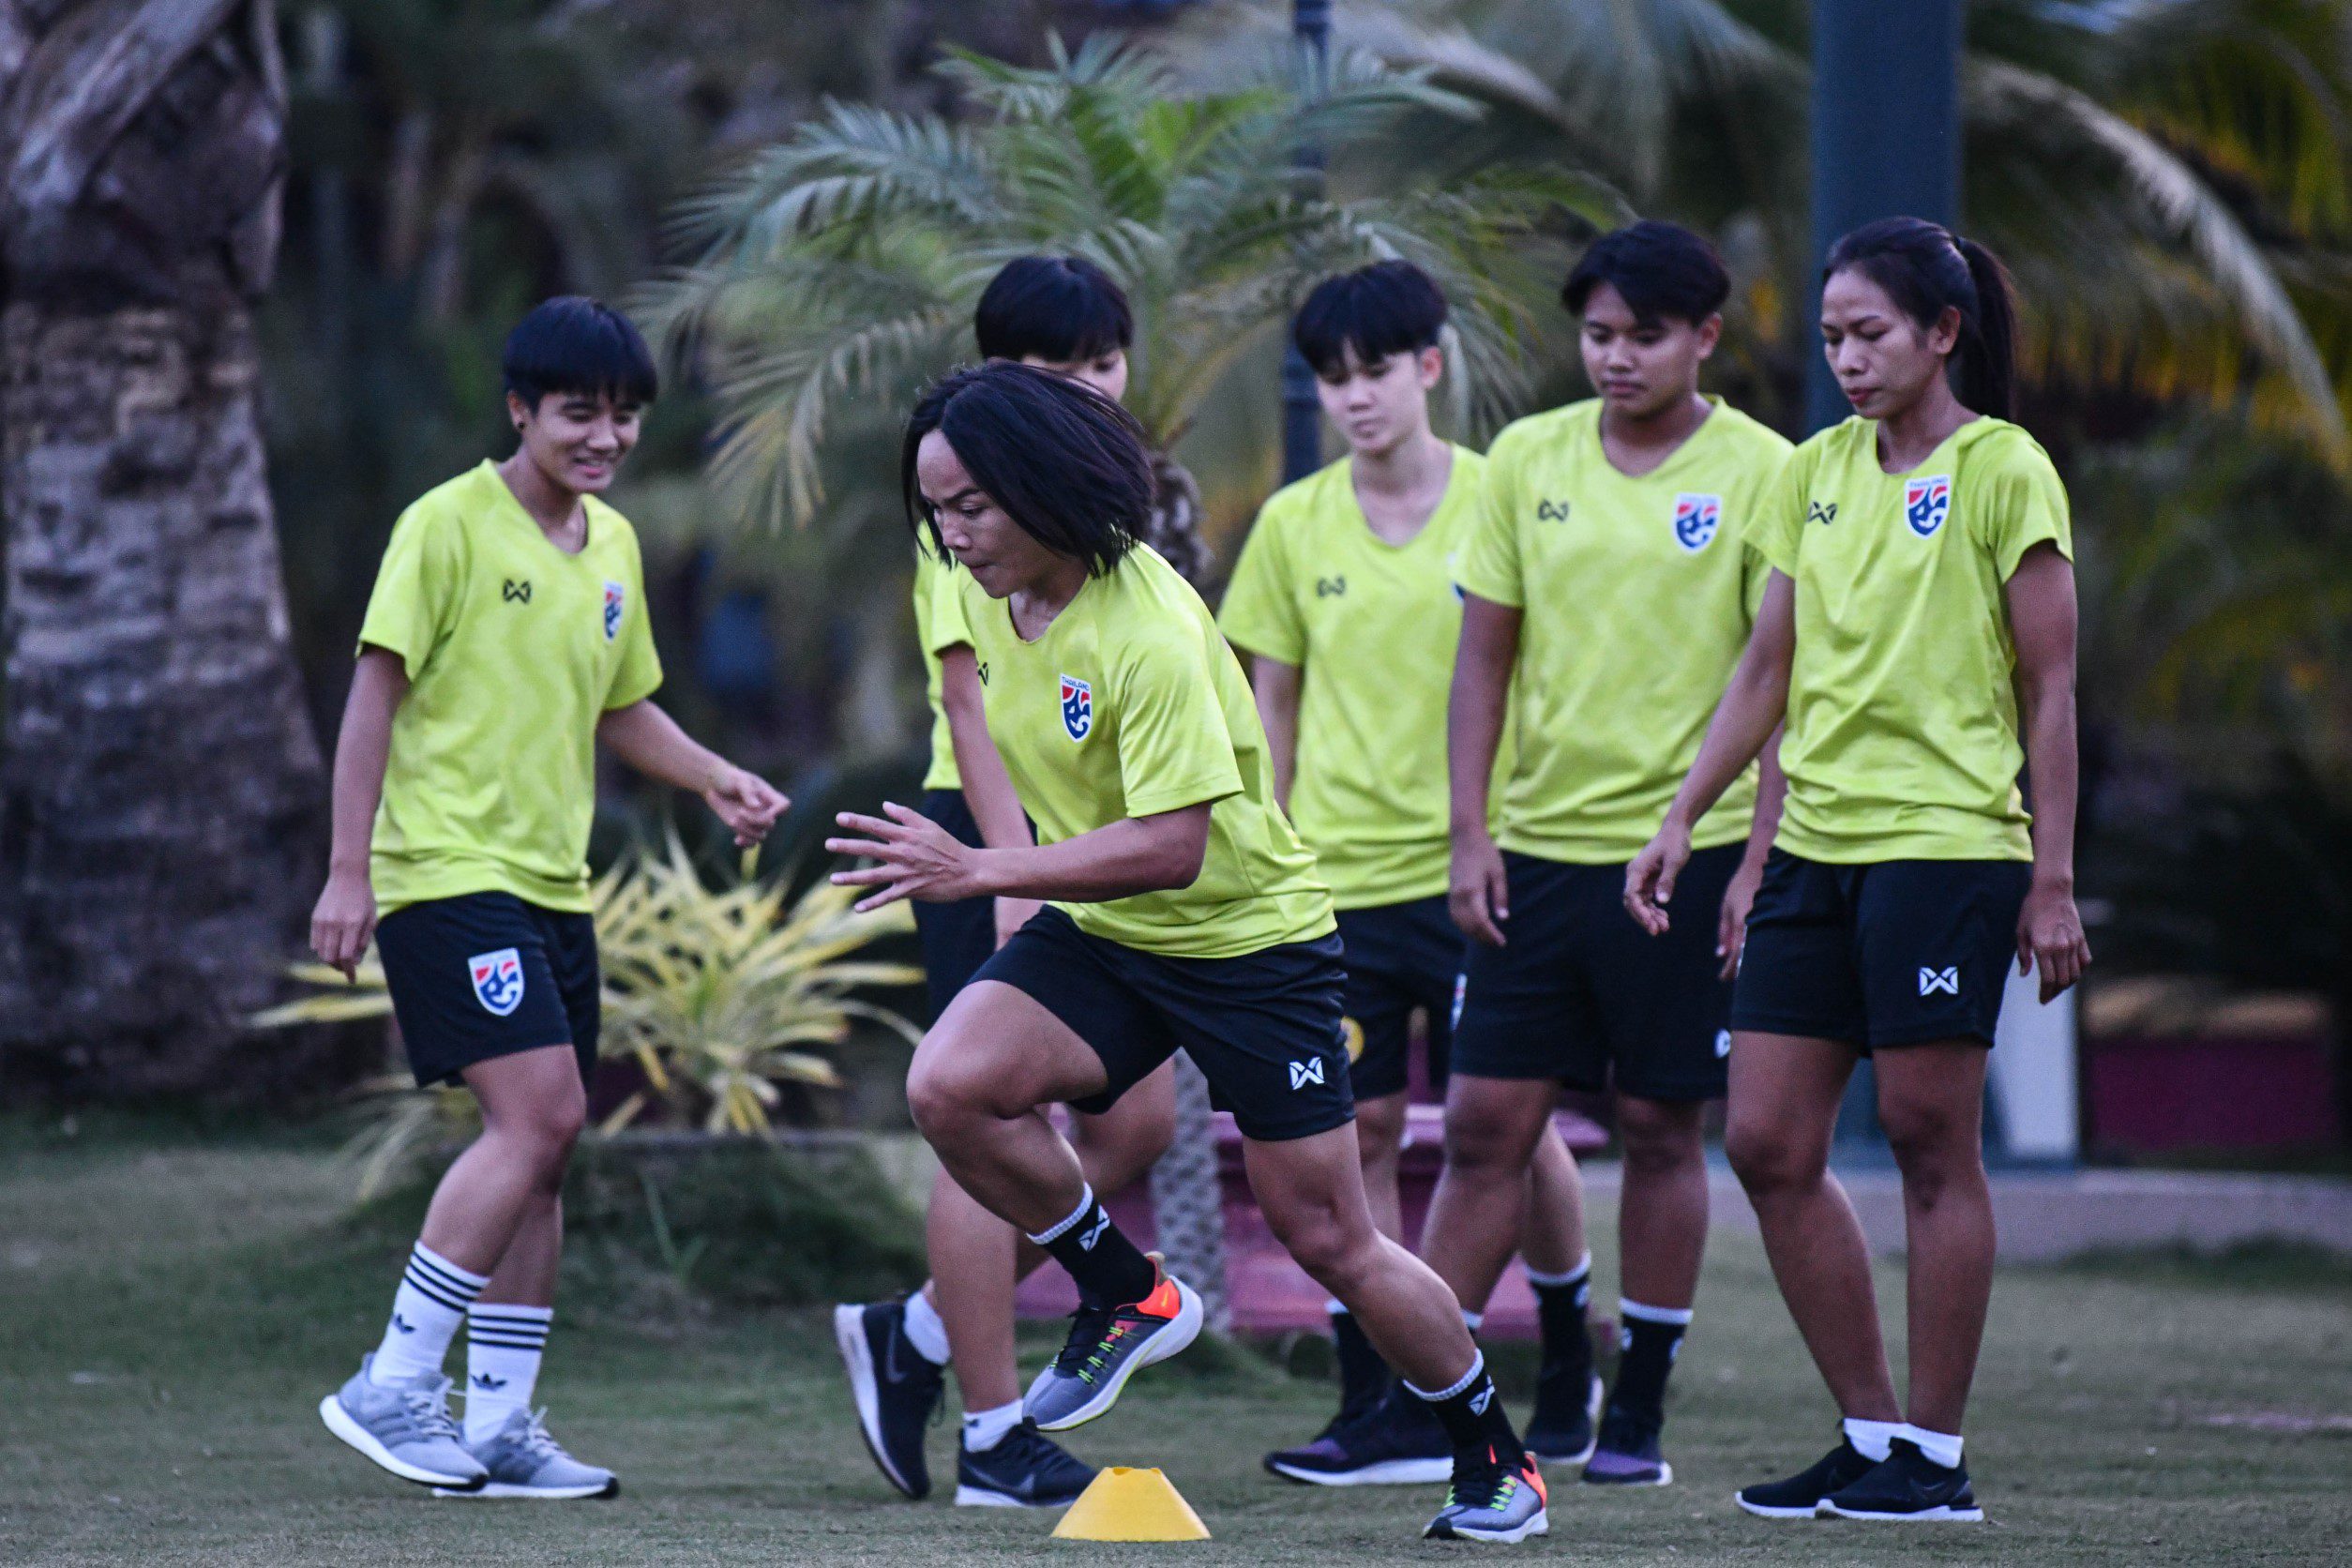 ฟุตบอลหญิงไทยพร้อมเผด็จศึกเมียนมาเกมอุ่นถิ่นหม่อง